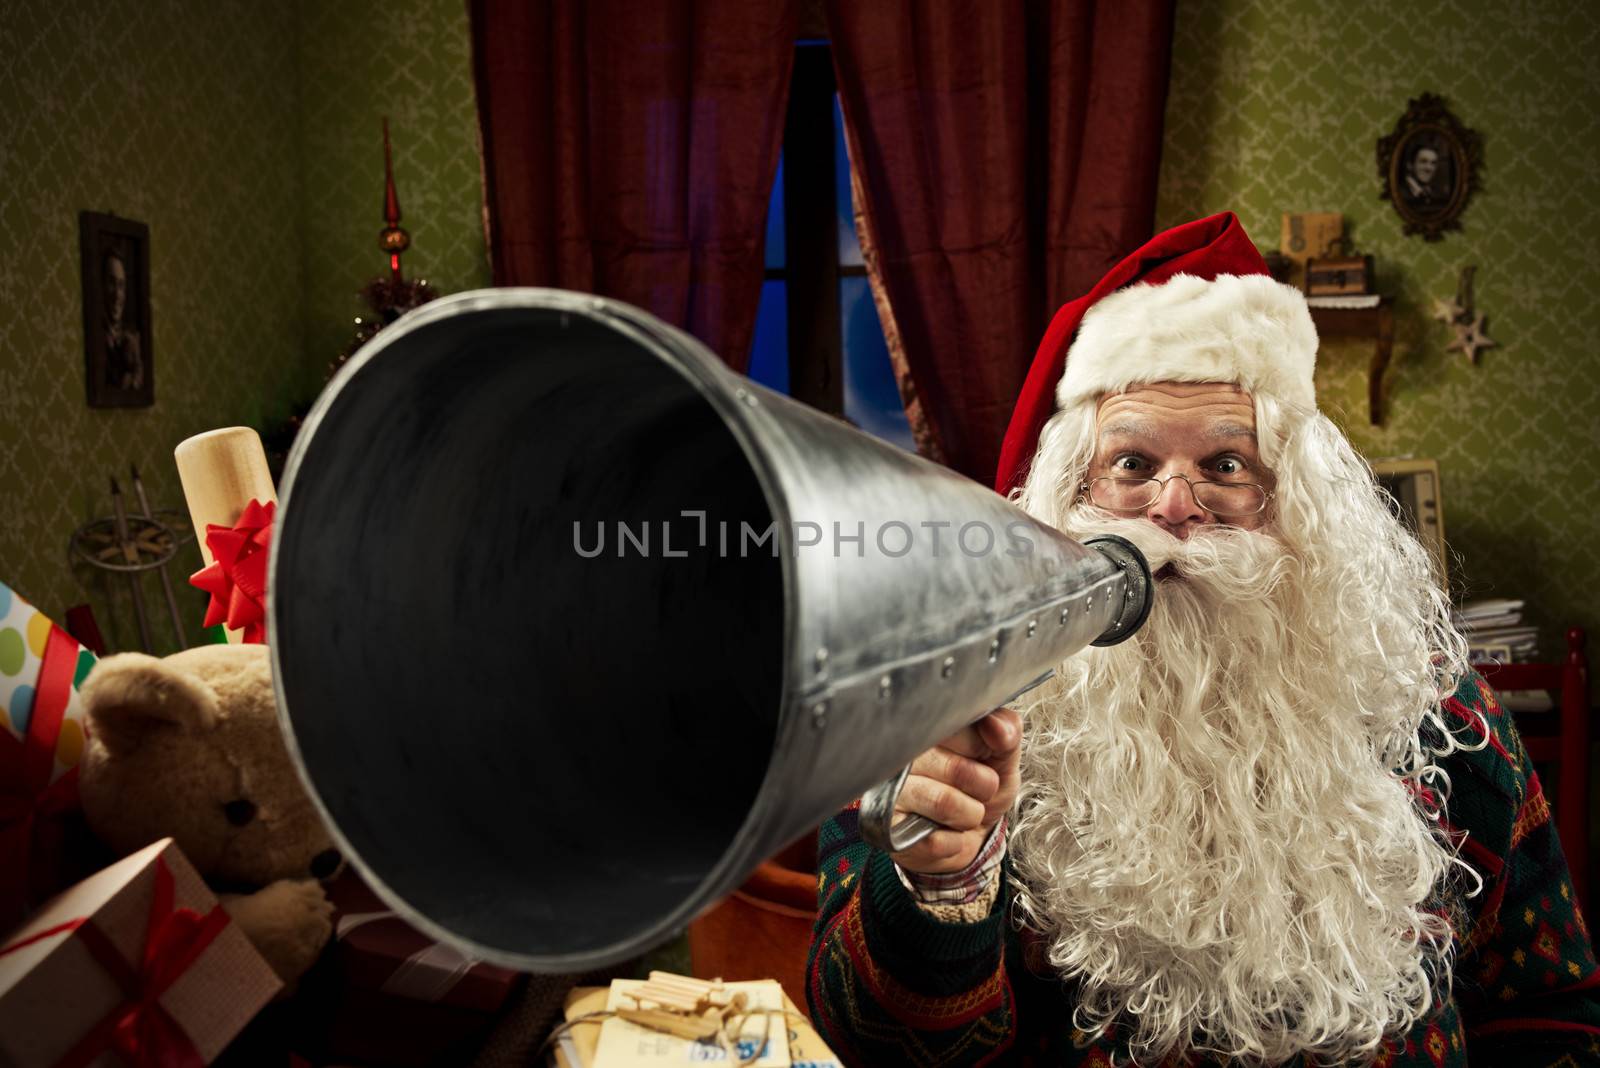 SantaClaus shouting into a vintage megaphone